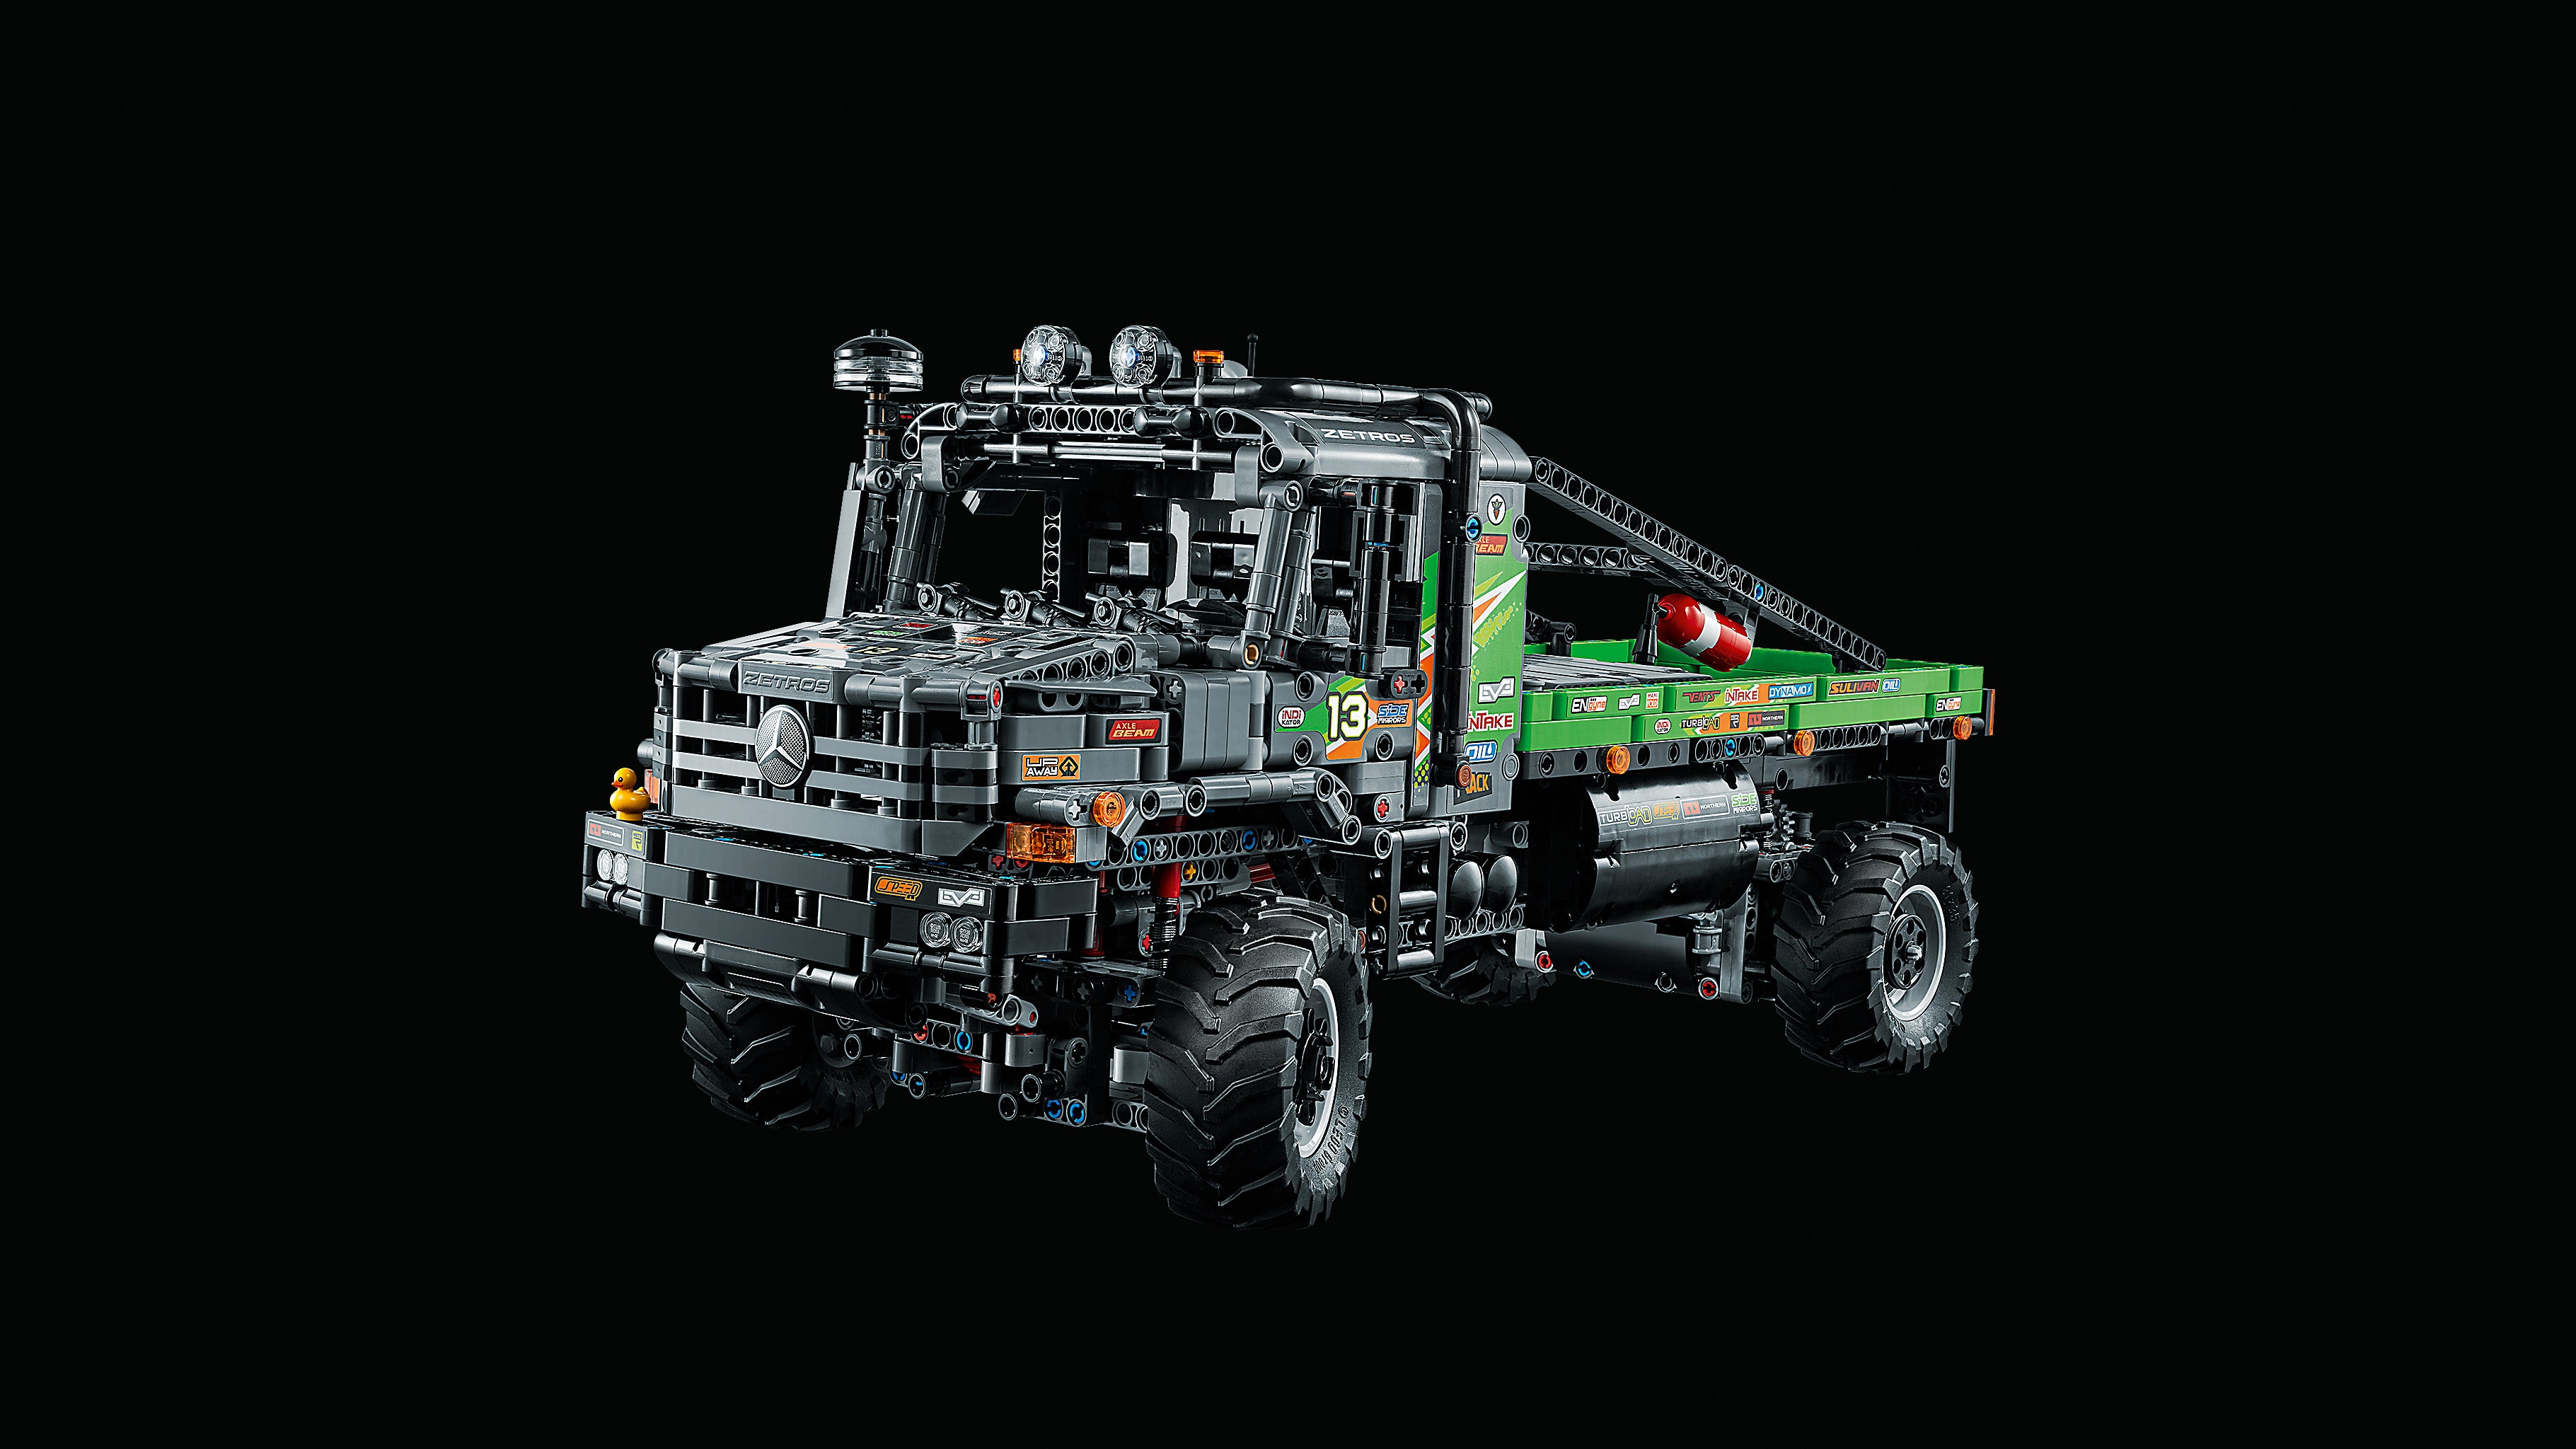 Lego 42129 Technic Mercedes Benz Zetros 4x4